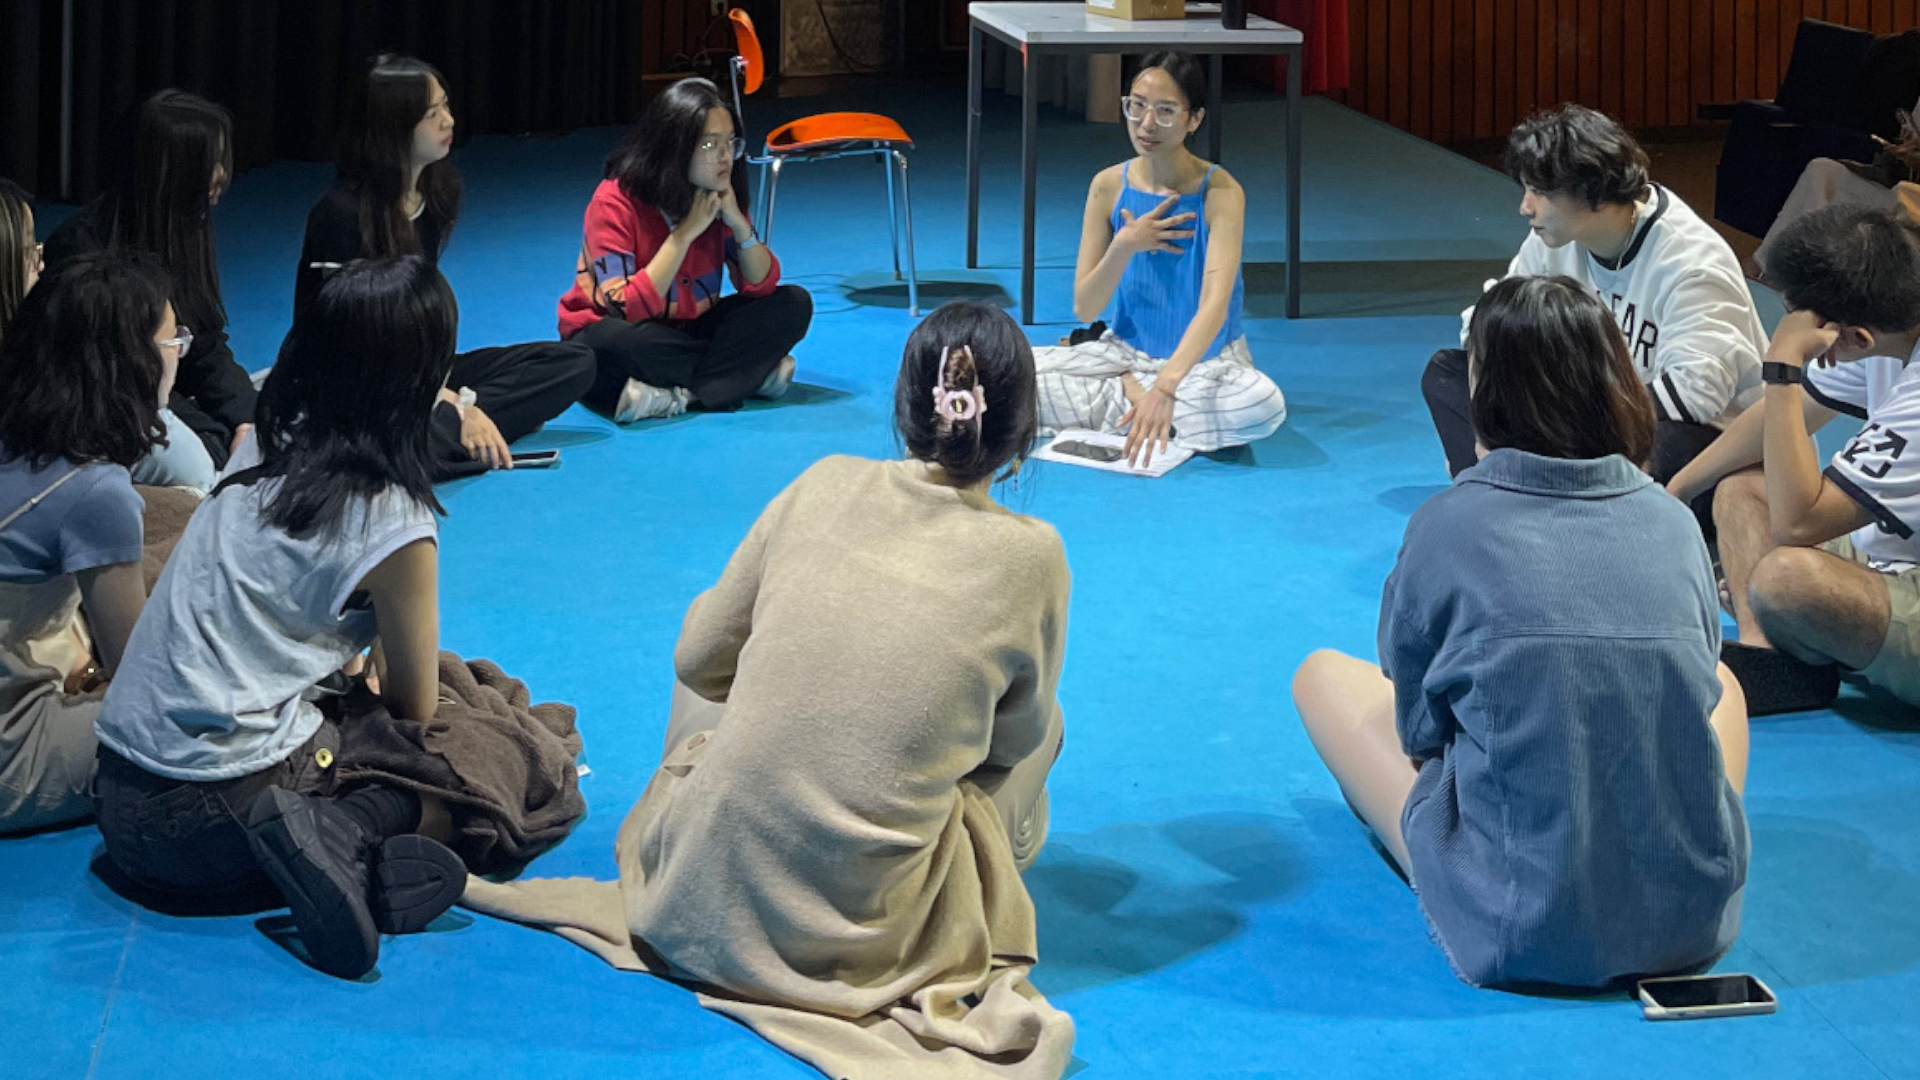 Hoi - Vietnamesischer Kulturabend - Die Teilnehmerinnen und Teilnehmer des Kulturabends sitzen gemeinsam im Kreis auf dem Fußboden.